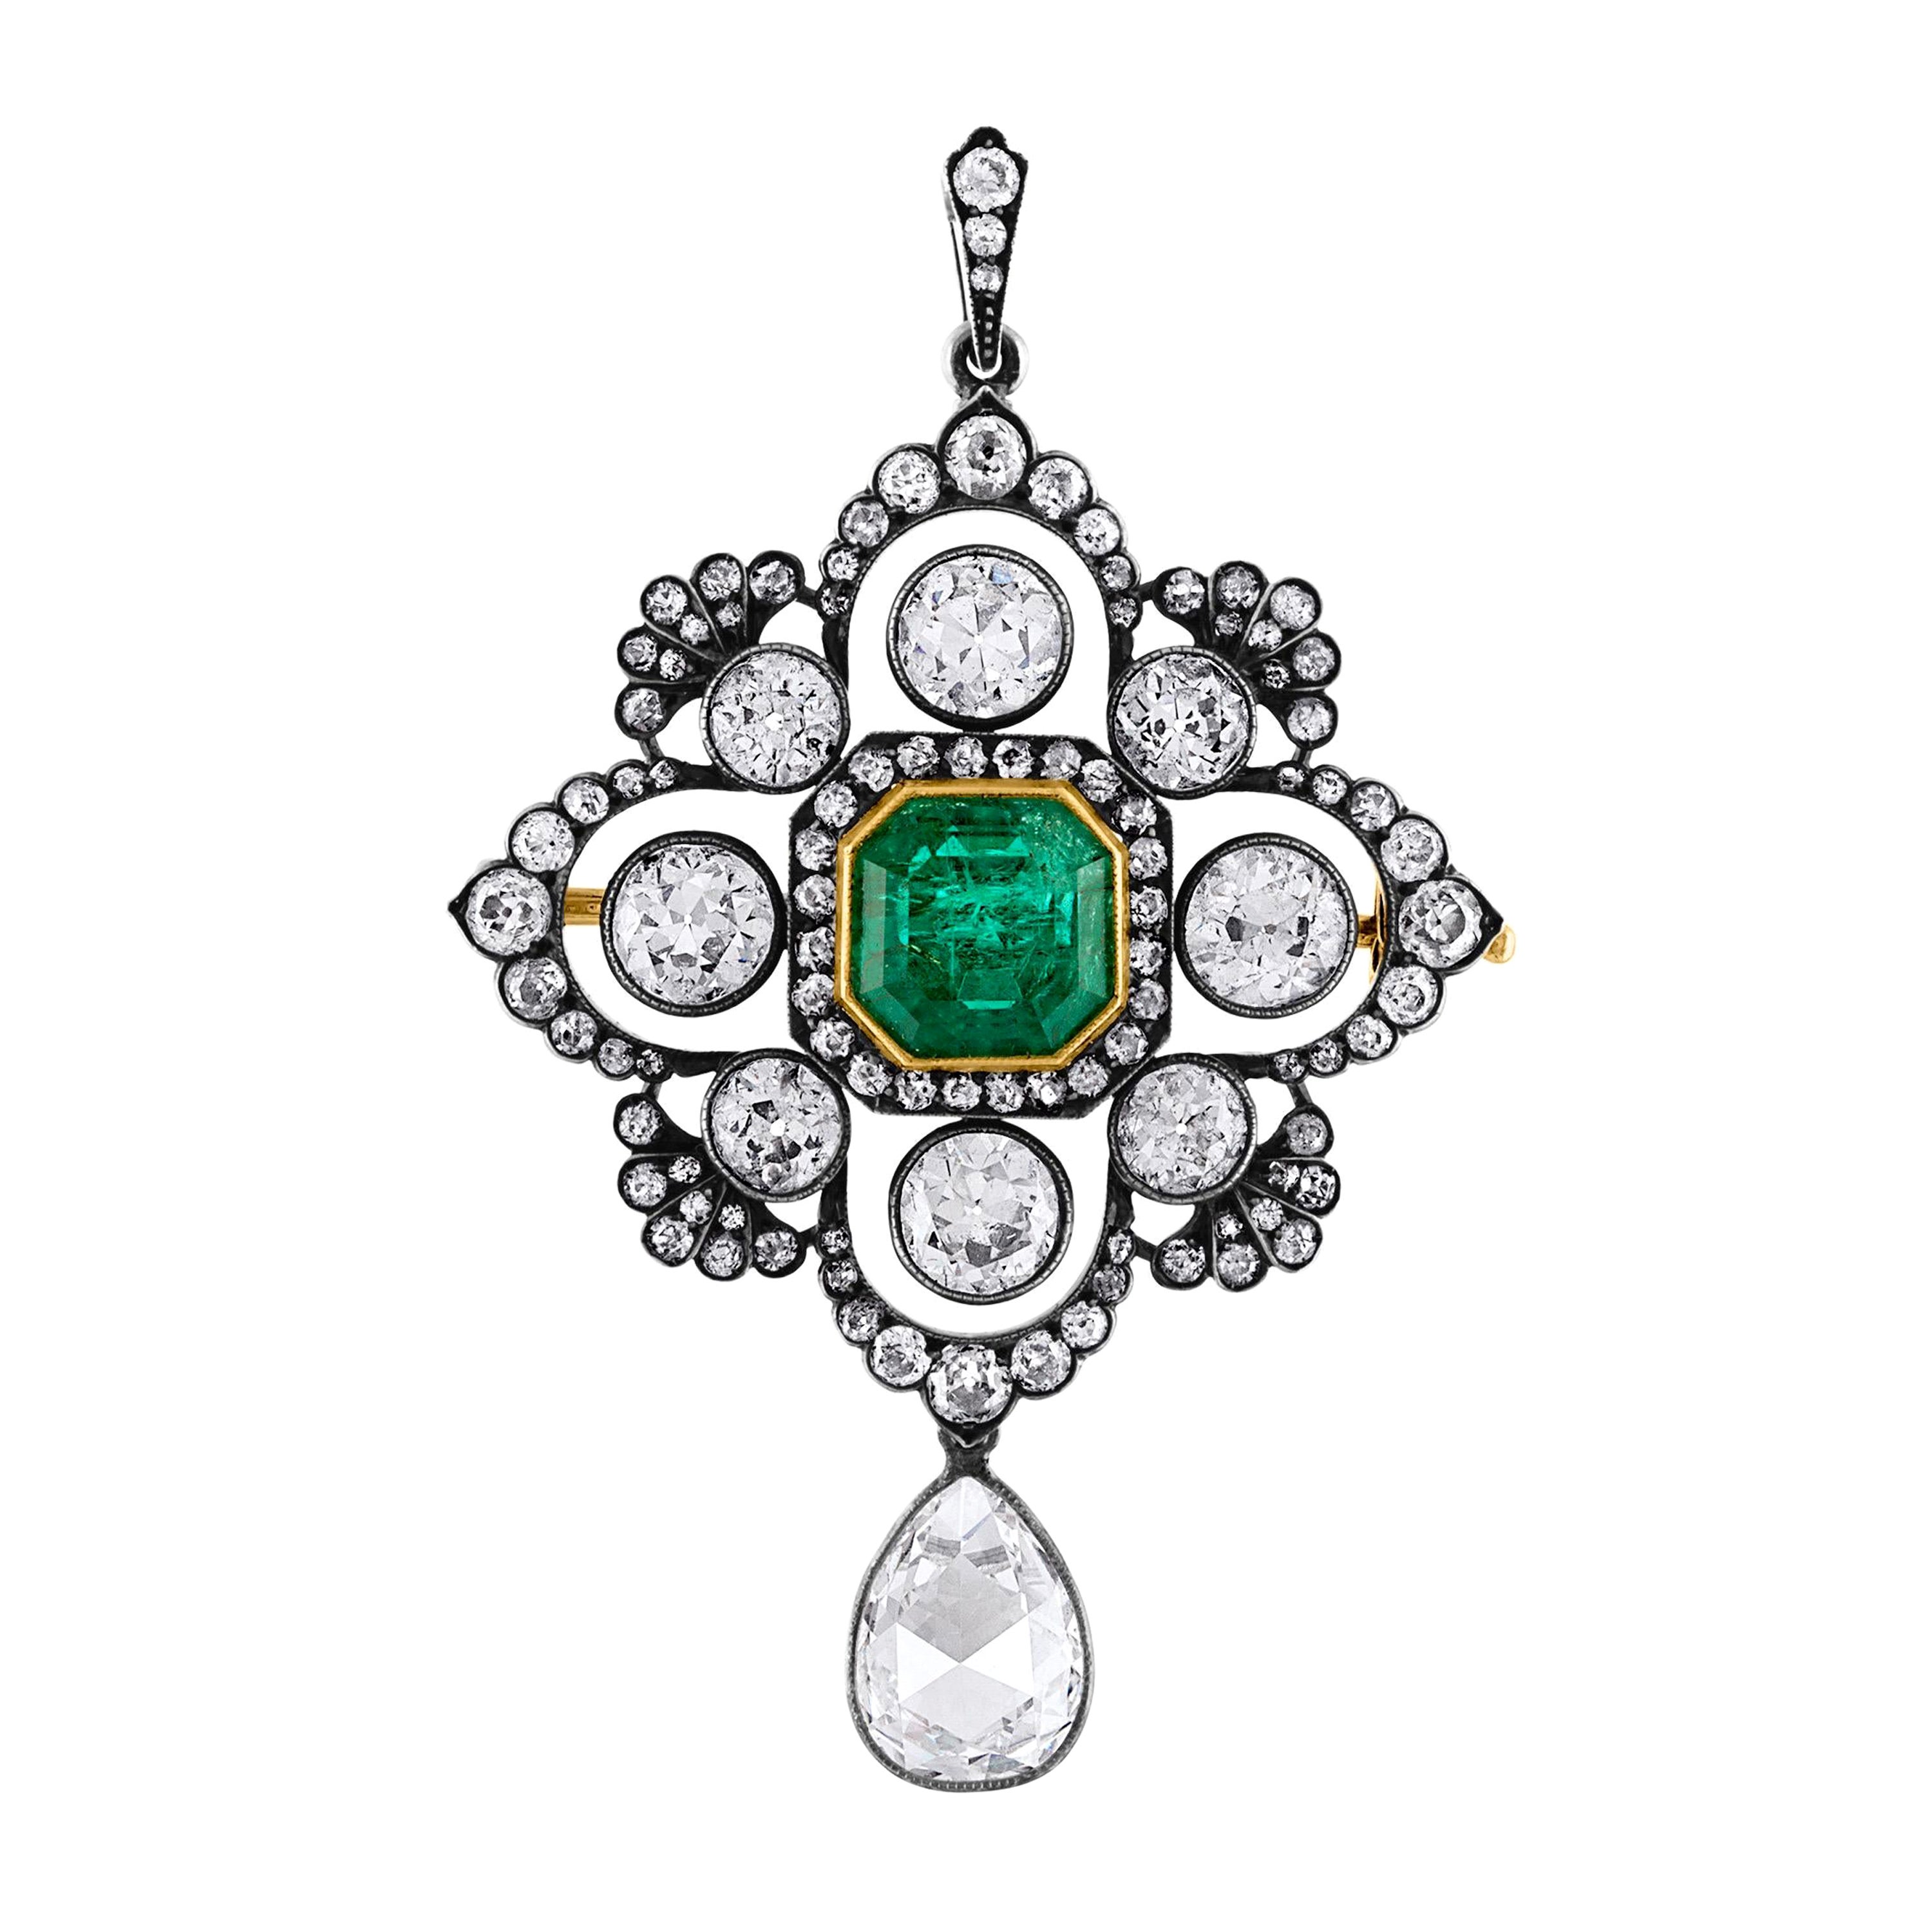  Viktorianische Brosche mit Anhänger, 4,26 Karat kolumbianischer Smaragd und 8,49 Karat Diamant